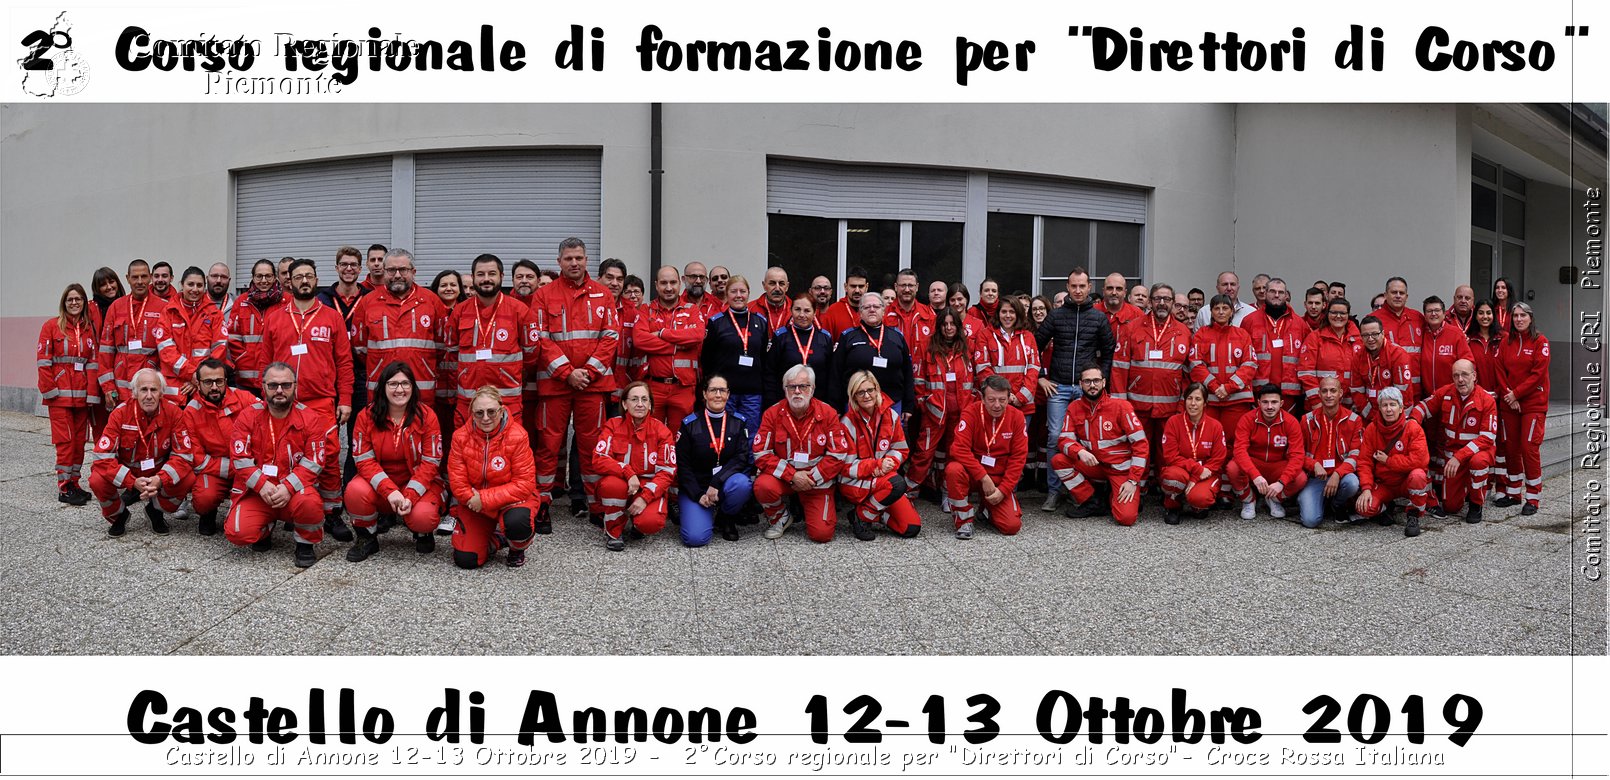 Castello di Annone 12-13 Ottobre 2019 - 2Corso regionale per "Direttori di Corso" - Croce Rossa Italiana